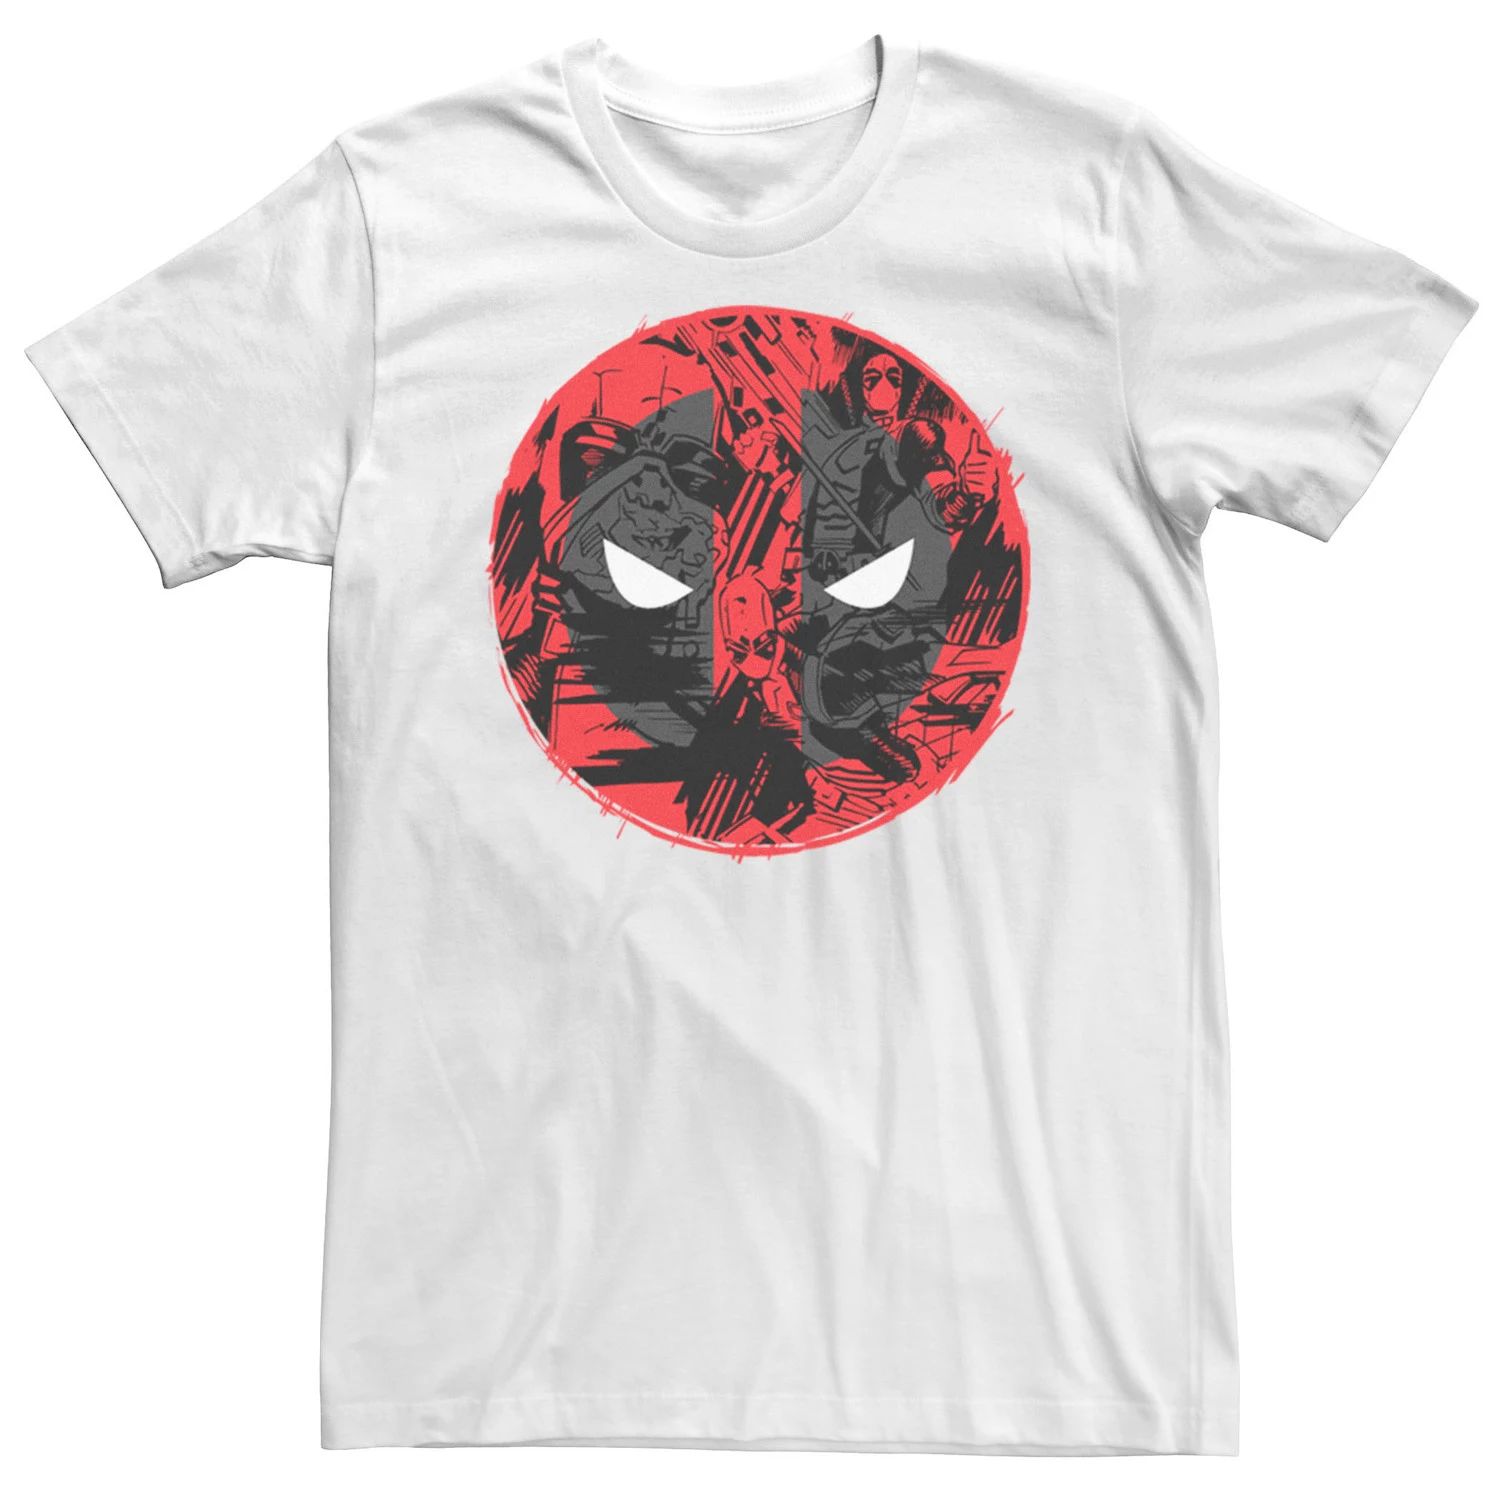 Мужская футболка с логотипом Deadpool Action Fill Marvel